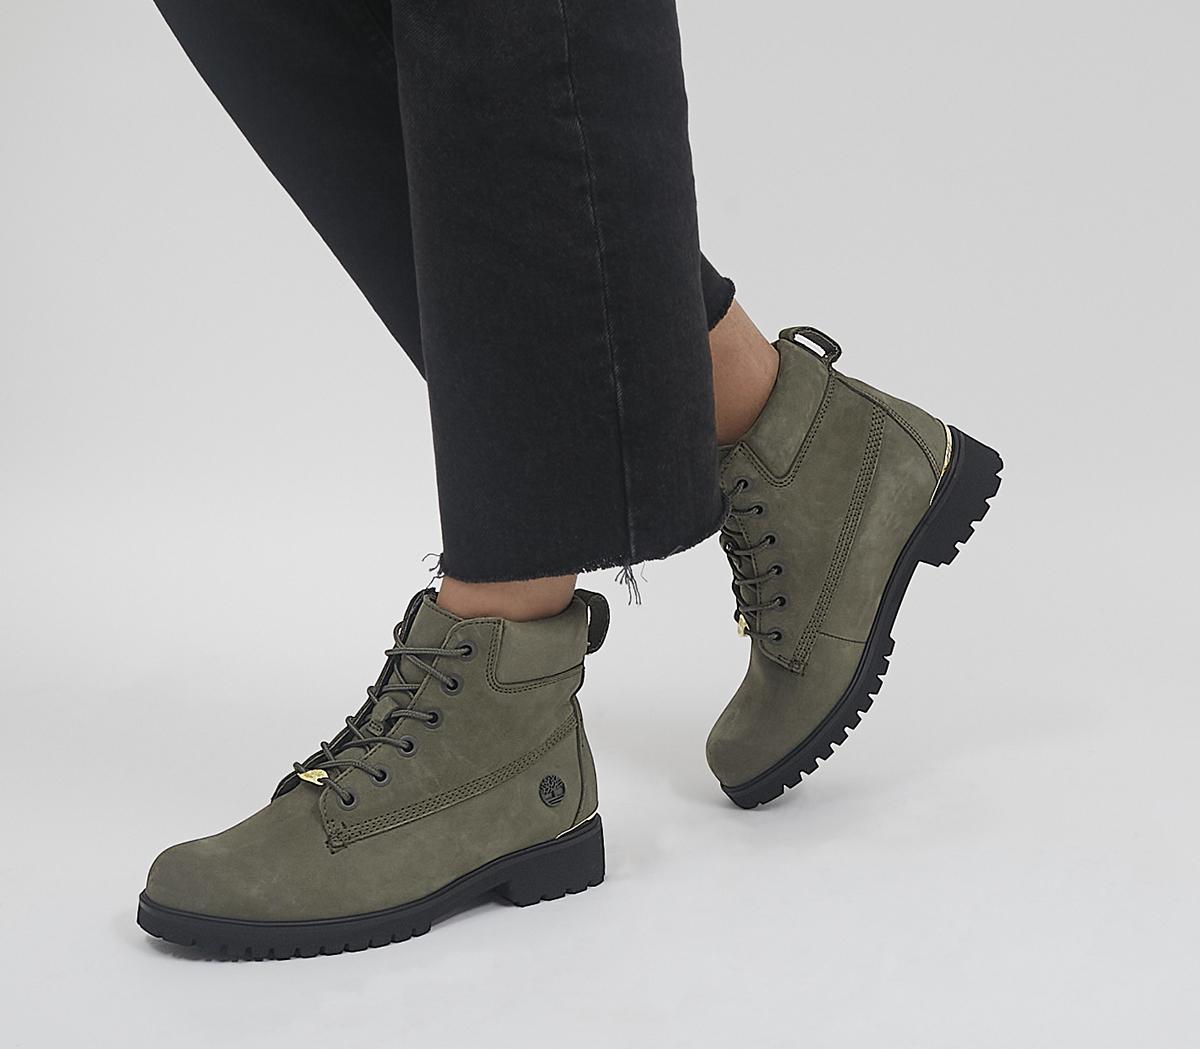 TimberlandSlim Premium 6 Inch BootsDark Green Metallic Heel